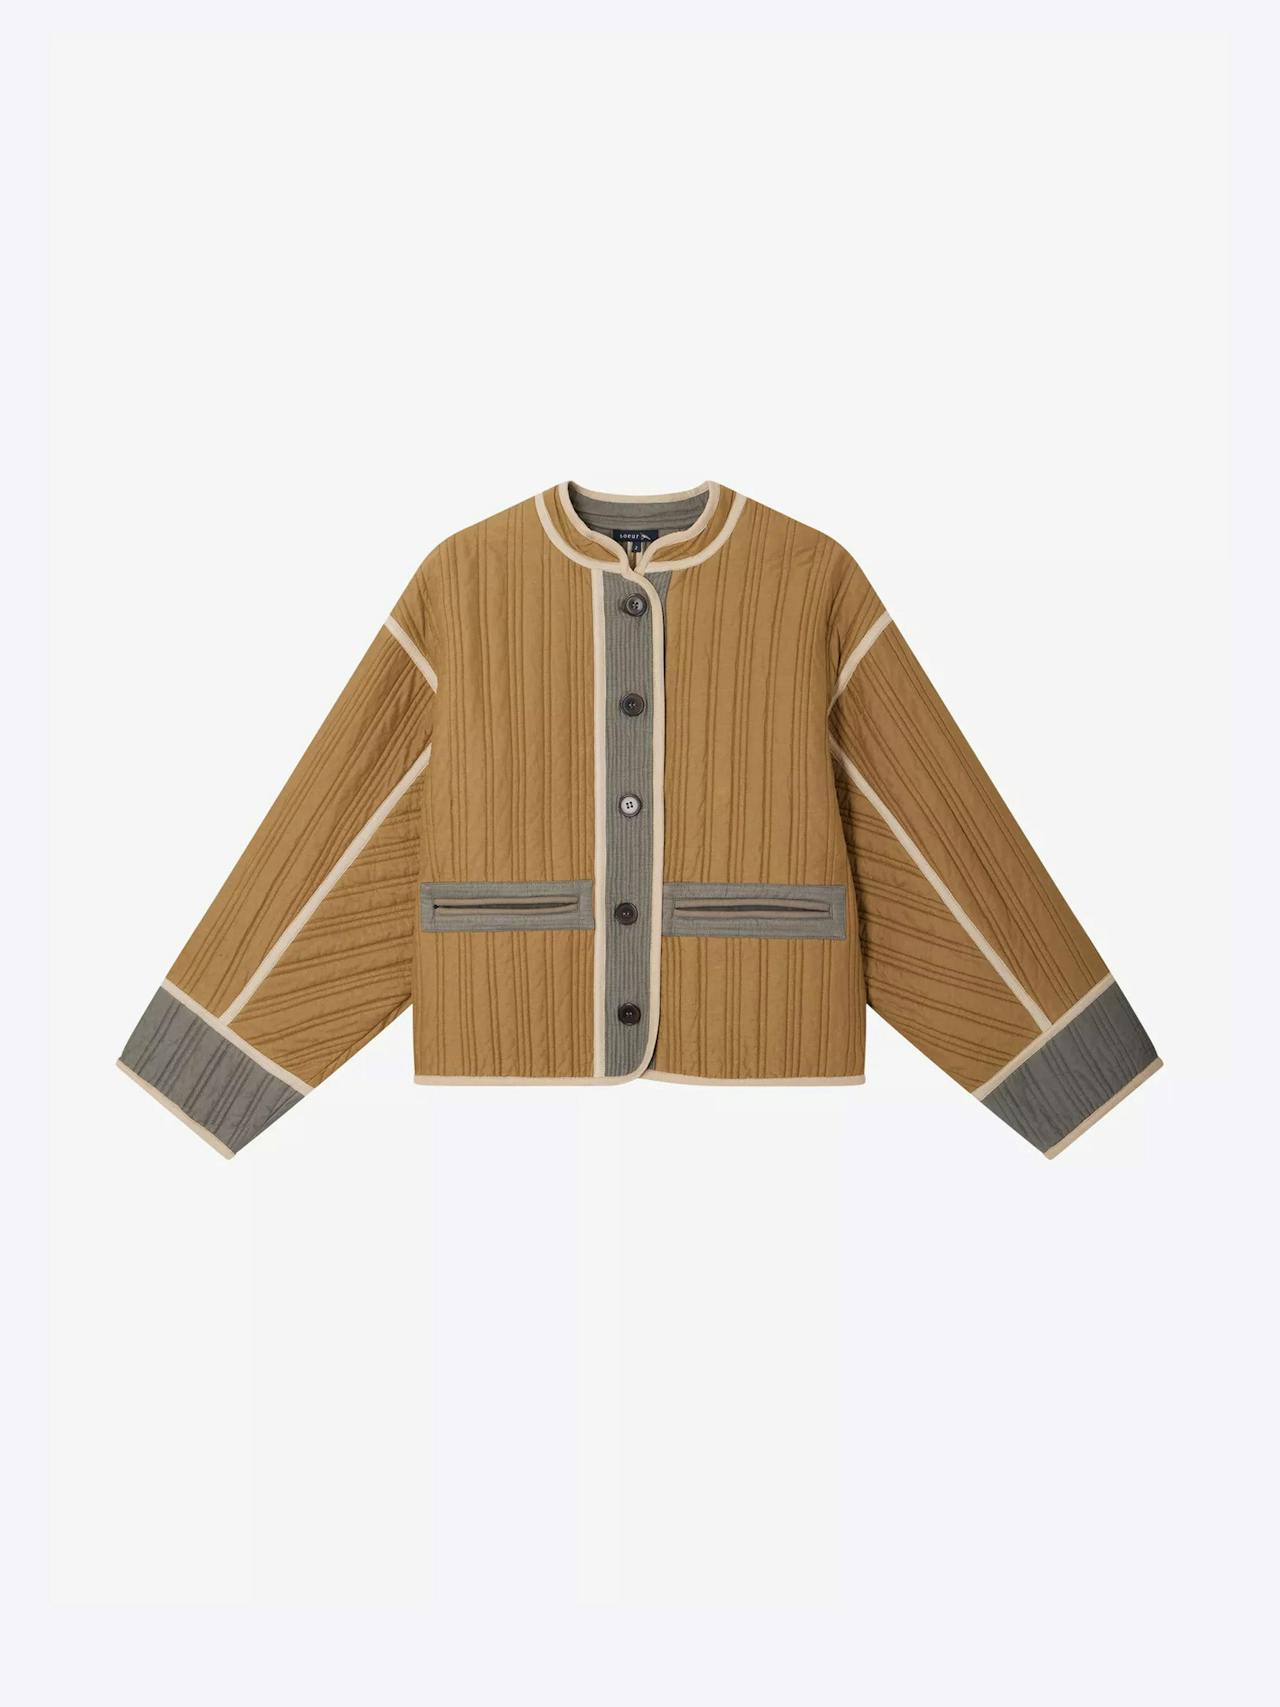 Patchouli textured cotton jacket